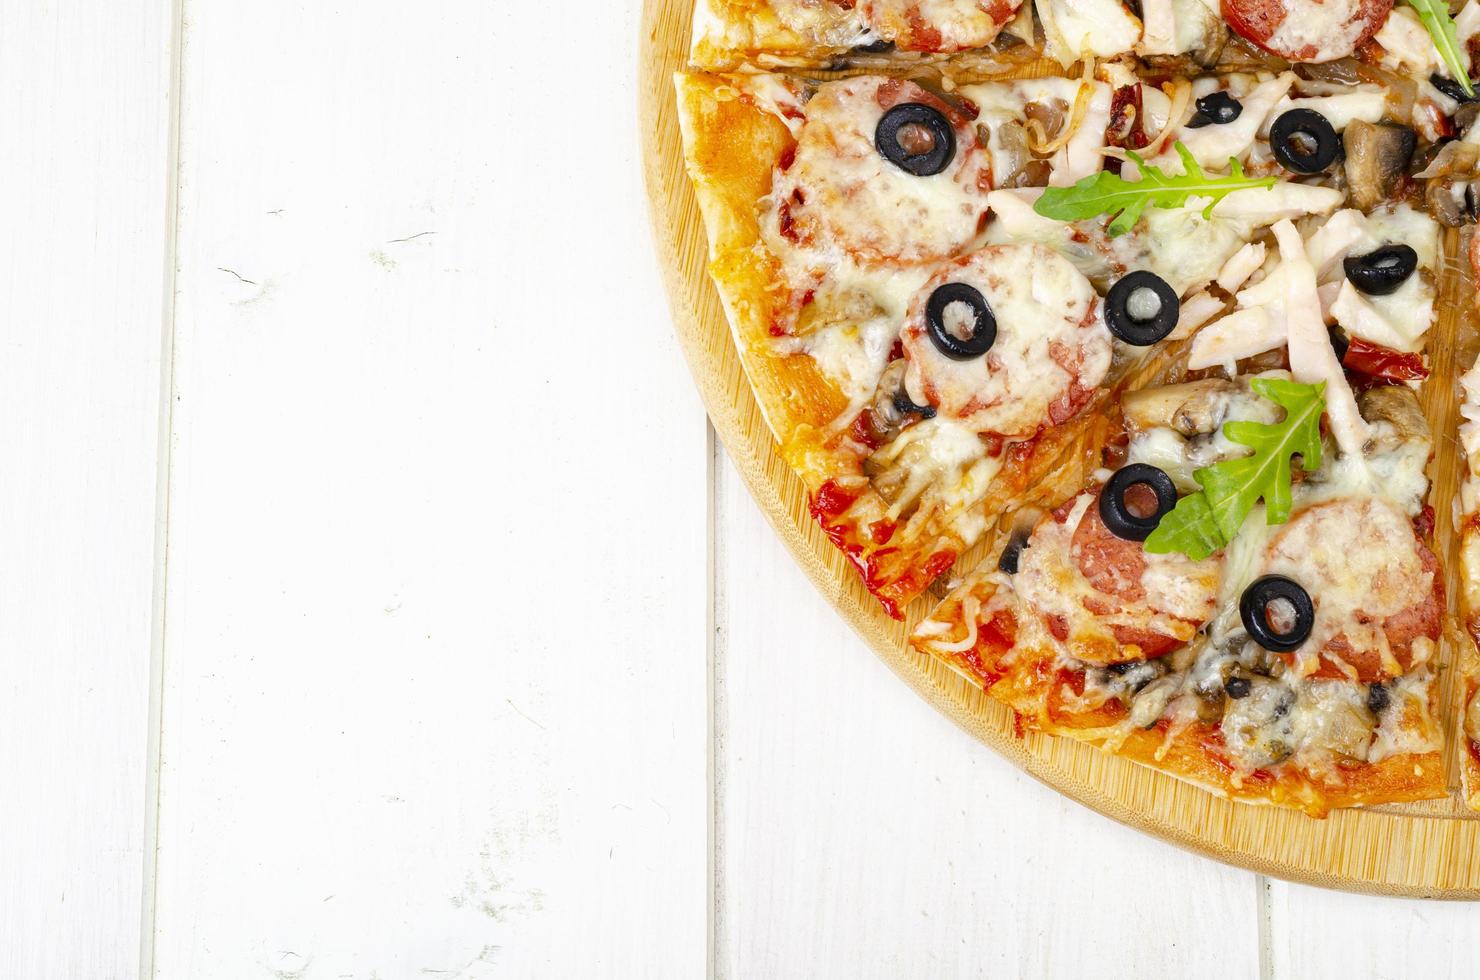 pizza caseira com salame, presunto e mussarela na mesa de madeira. foto de estúdio